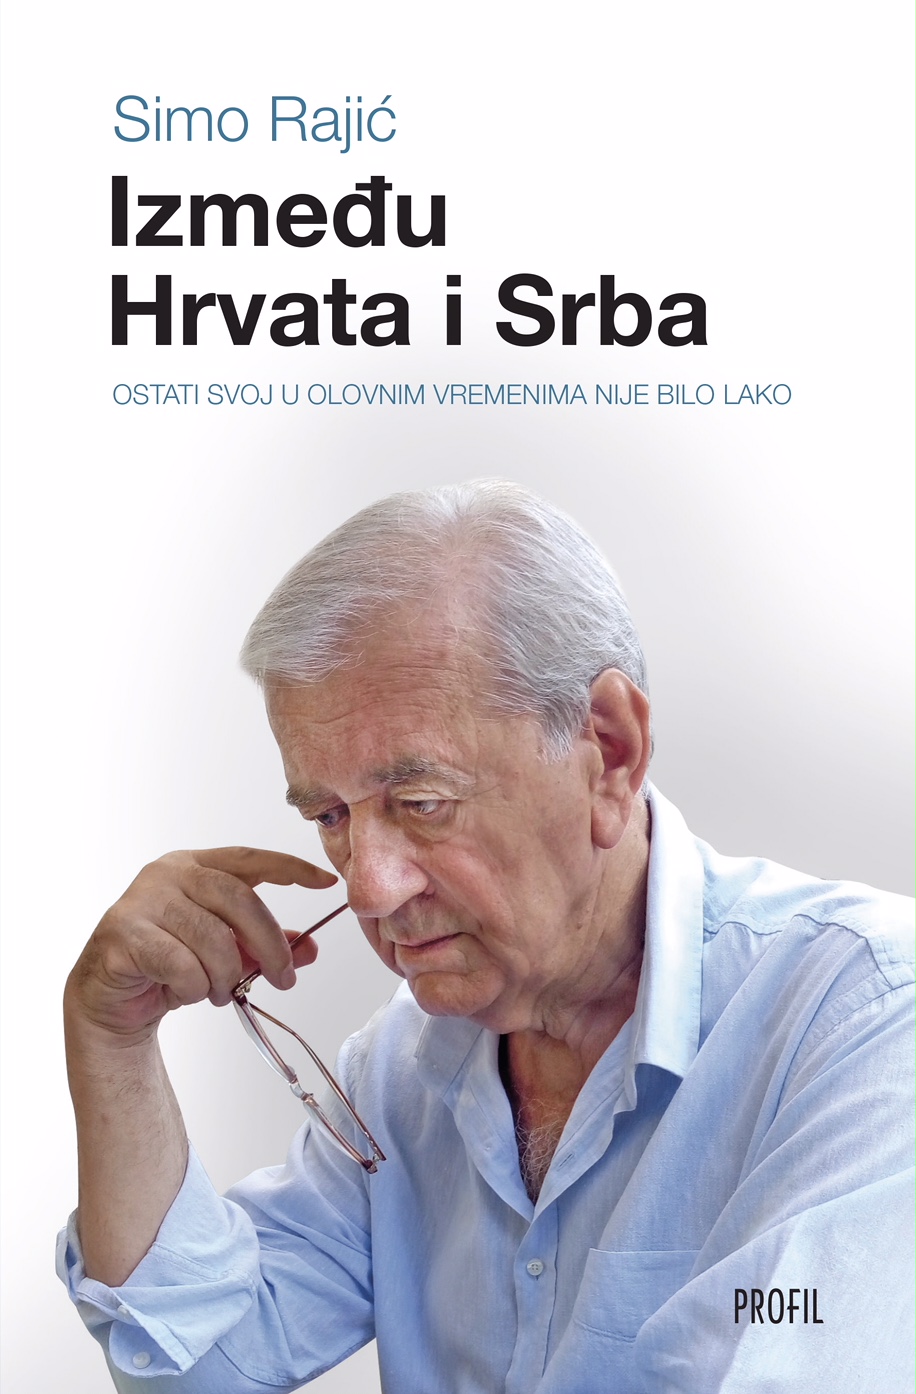 Promocija knjige Sime Rajića: “Između Hrvata i Srba”